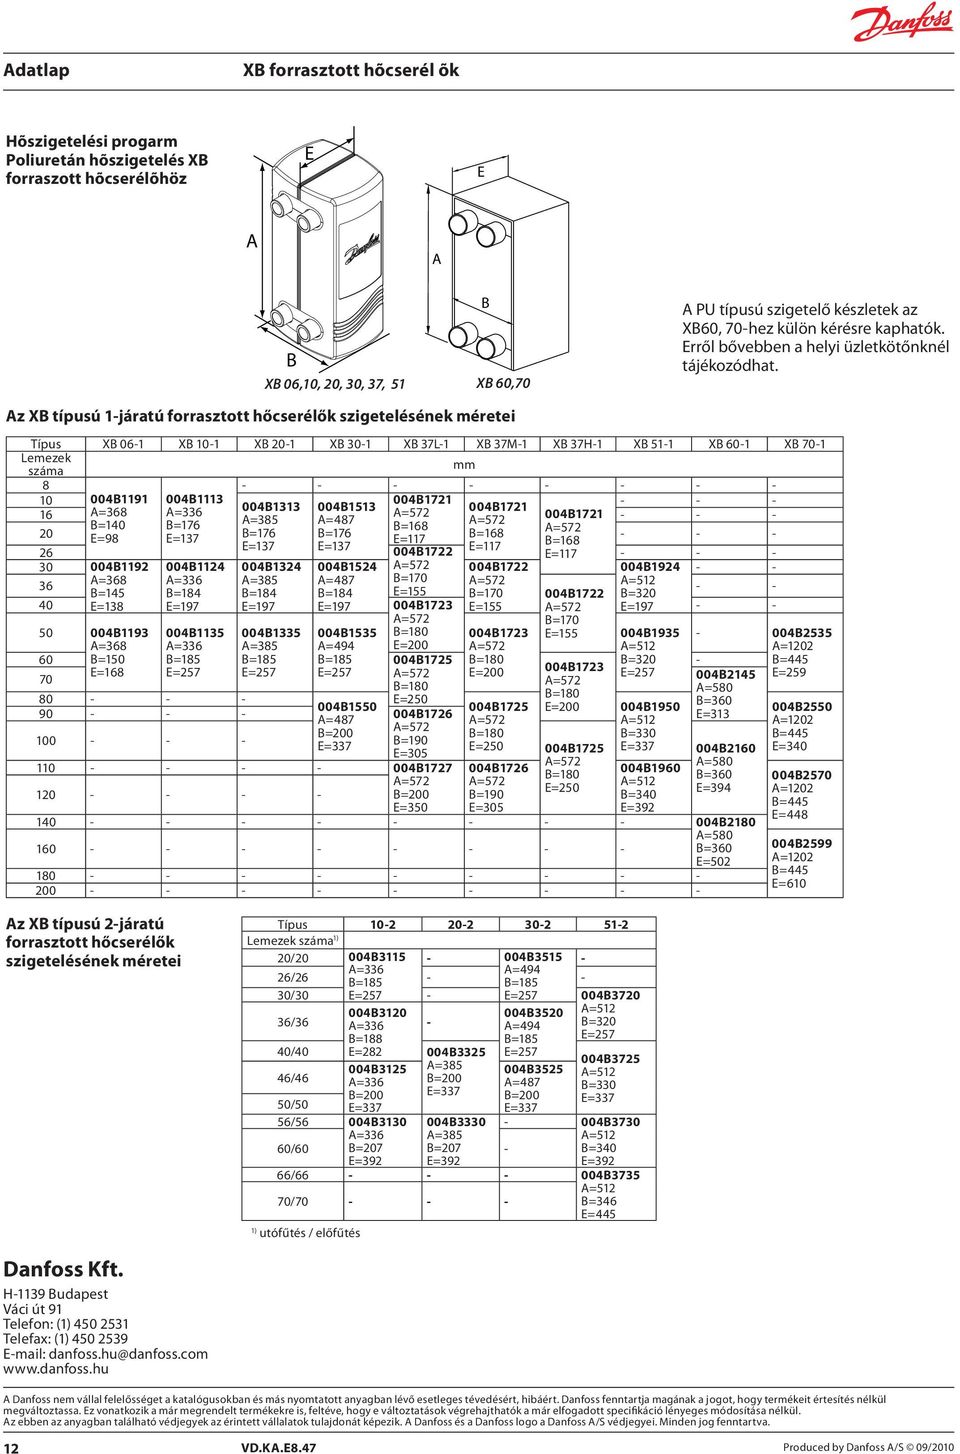 Az XB típusú 1-jártú forrsztott hőcserélők szigetelésének méretei Típus XB 06-1 XB 10-1 XB 20-1 XB 30-1 XB 37L-1 XB 37M-1 XB 37H-1 XB 51-1 XB 60-1 XB 70-1 Lemezek szám mm 8 - - - - - - - - 10